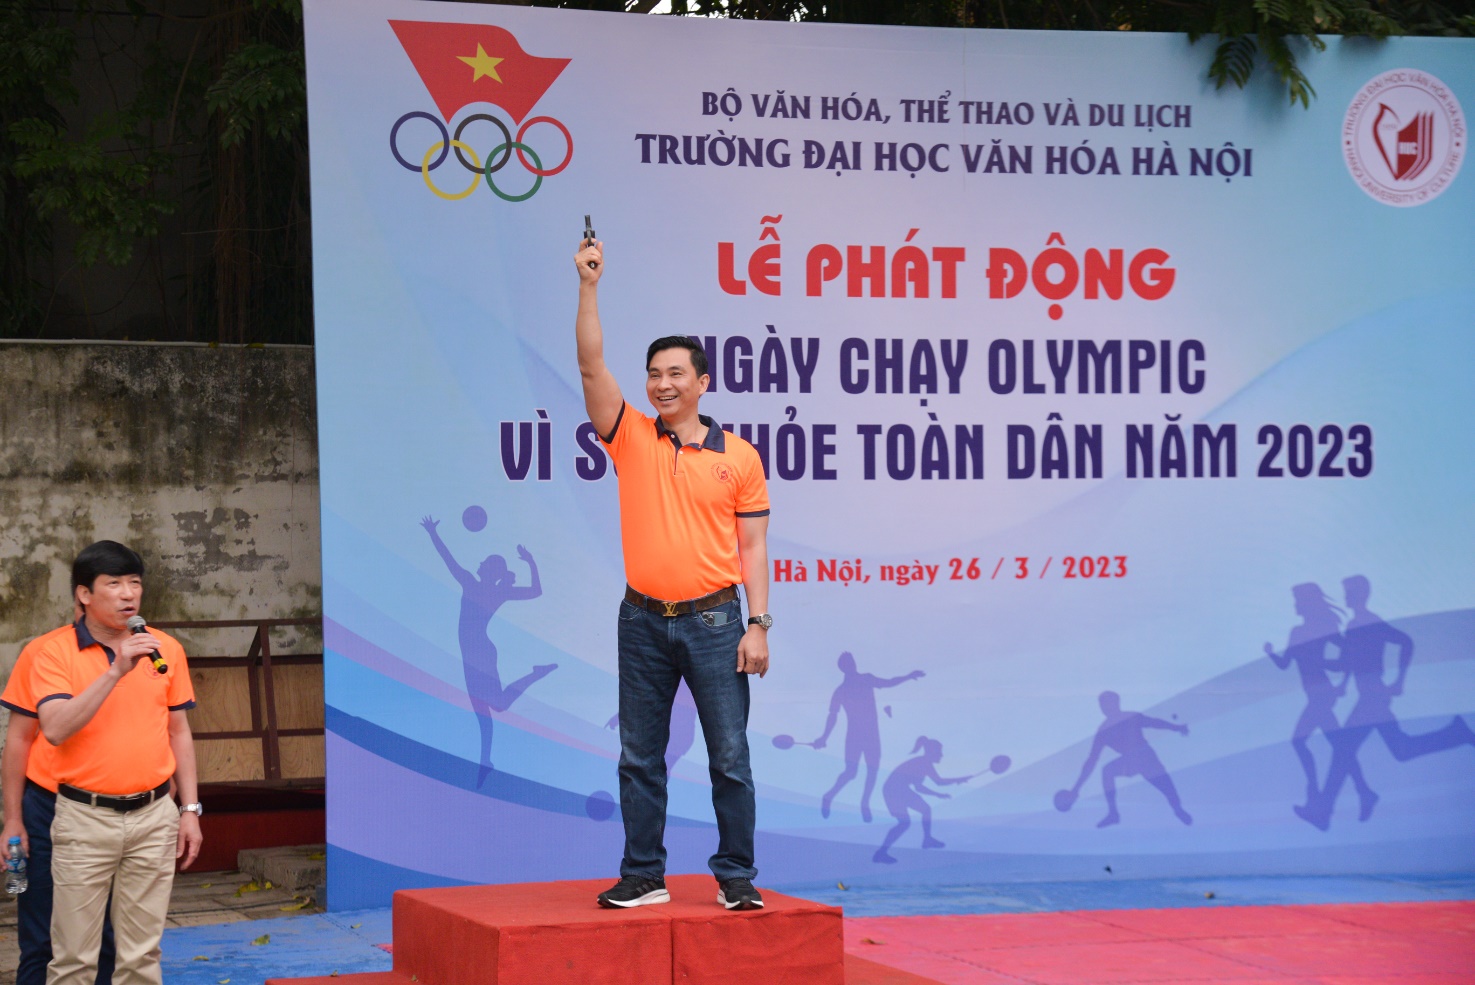 Trường Đại học Văn hóa Hà Nội hưởng ứng “Ngày chạy Olympic vì sức khỏe toàn dân năm 2023” - Ảnh 3.